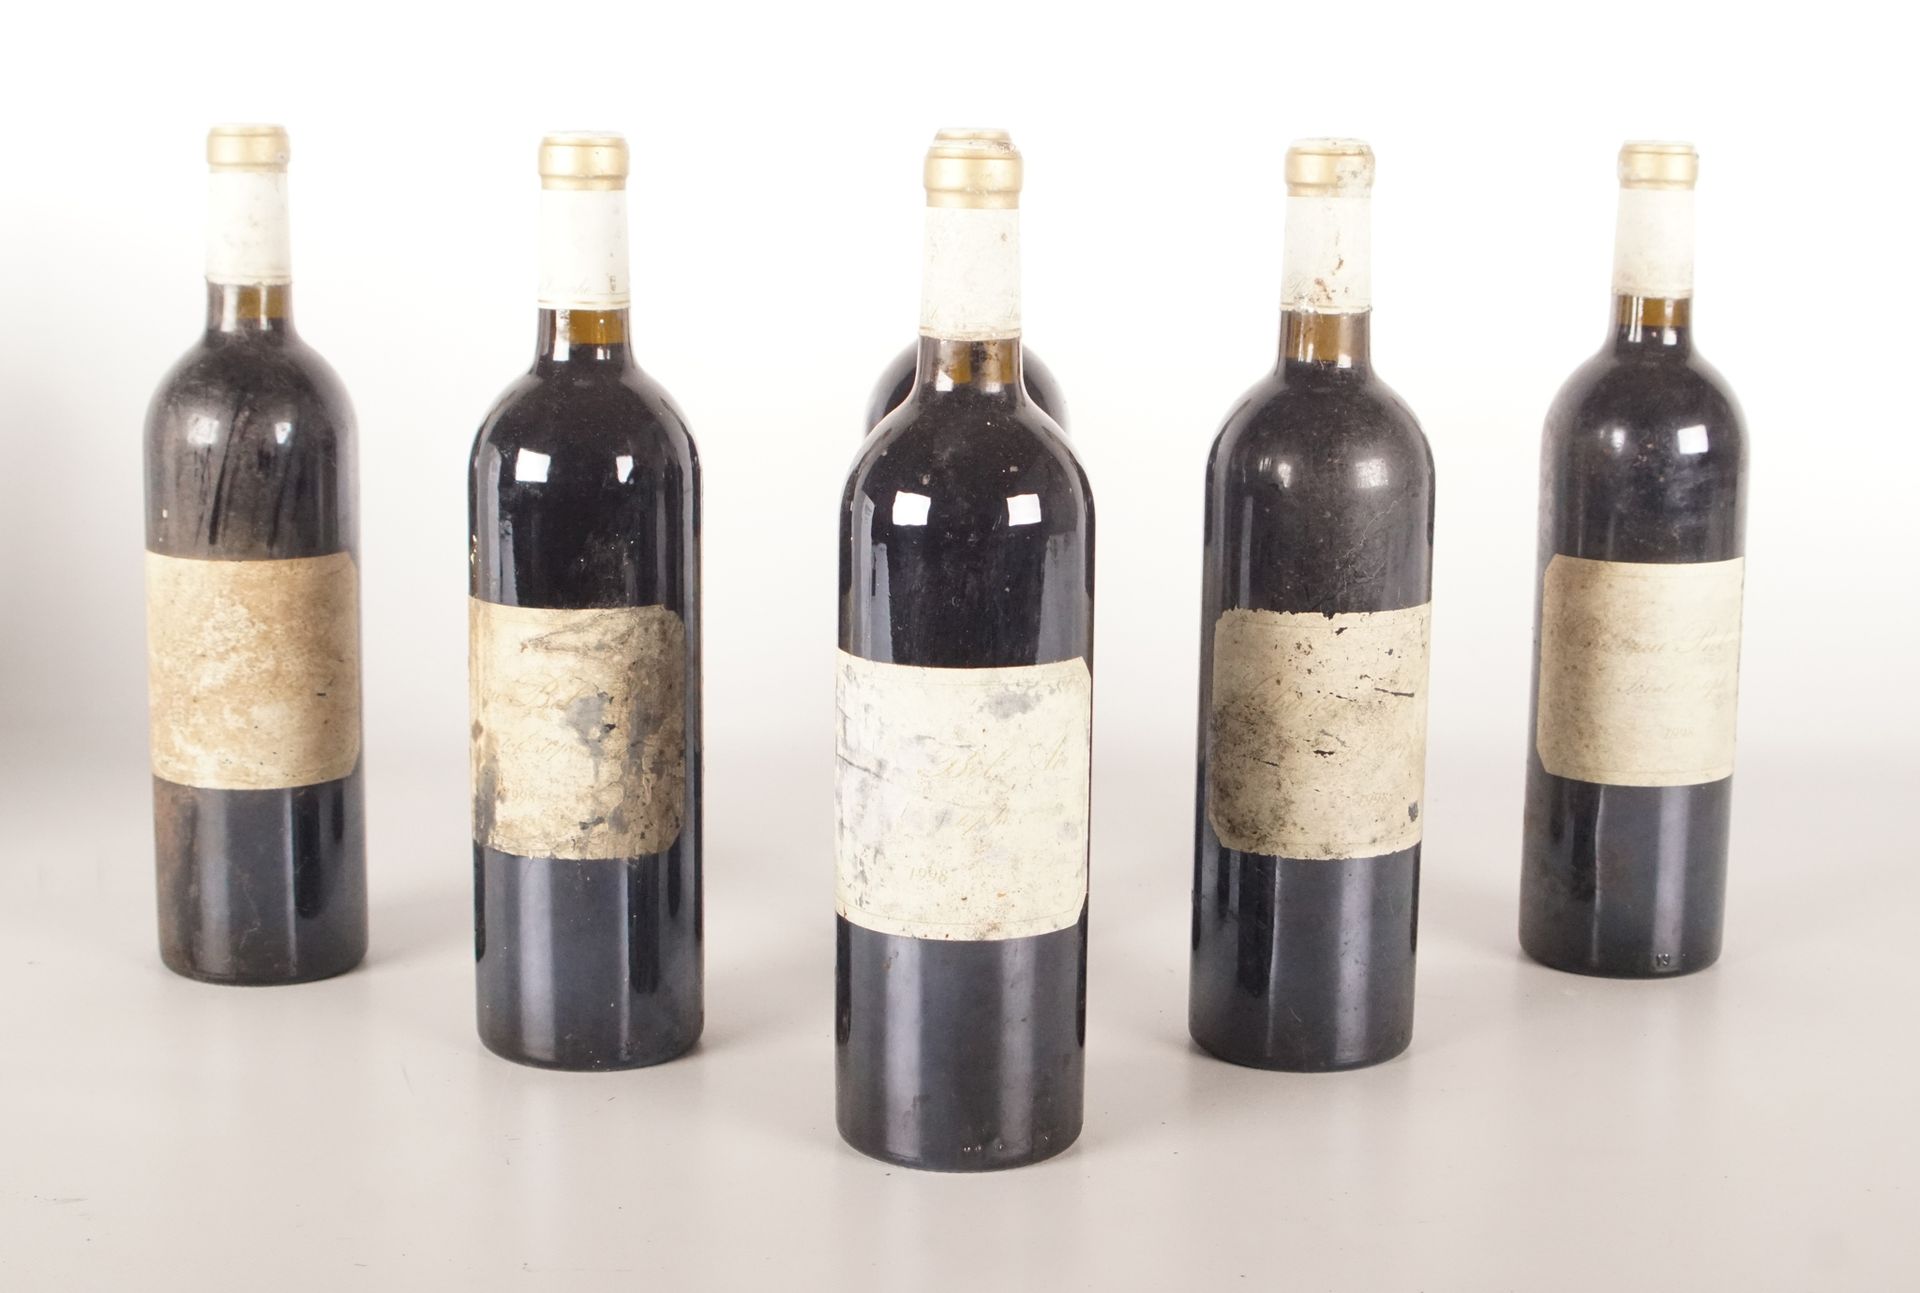 Vin - Saint-Estèphe - Bel Air - 1998 6 bouteilles - Bon niveau - Etiquettes quas&hellip;